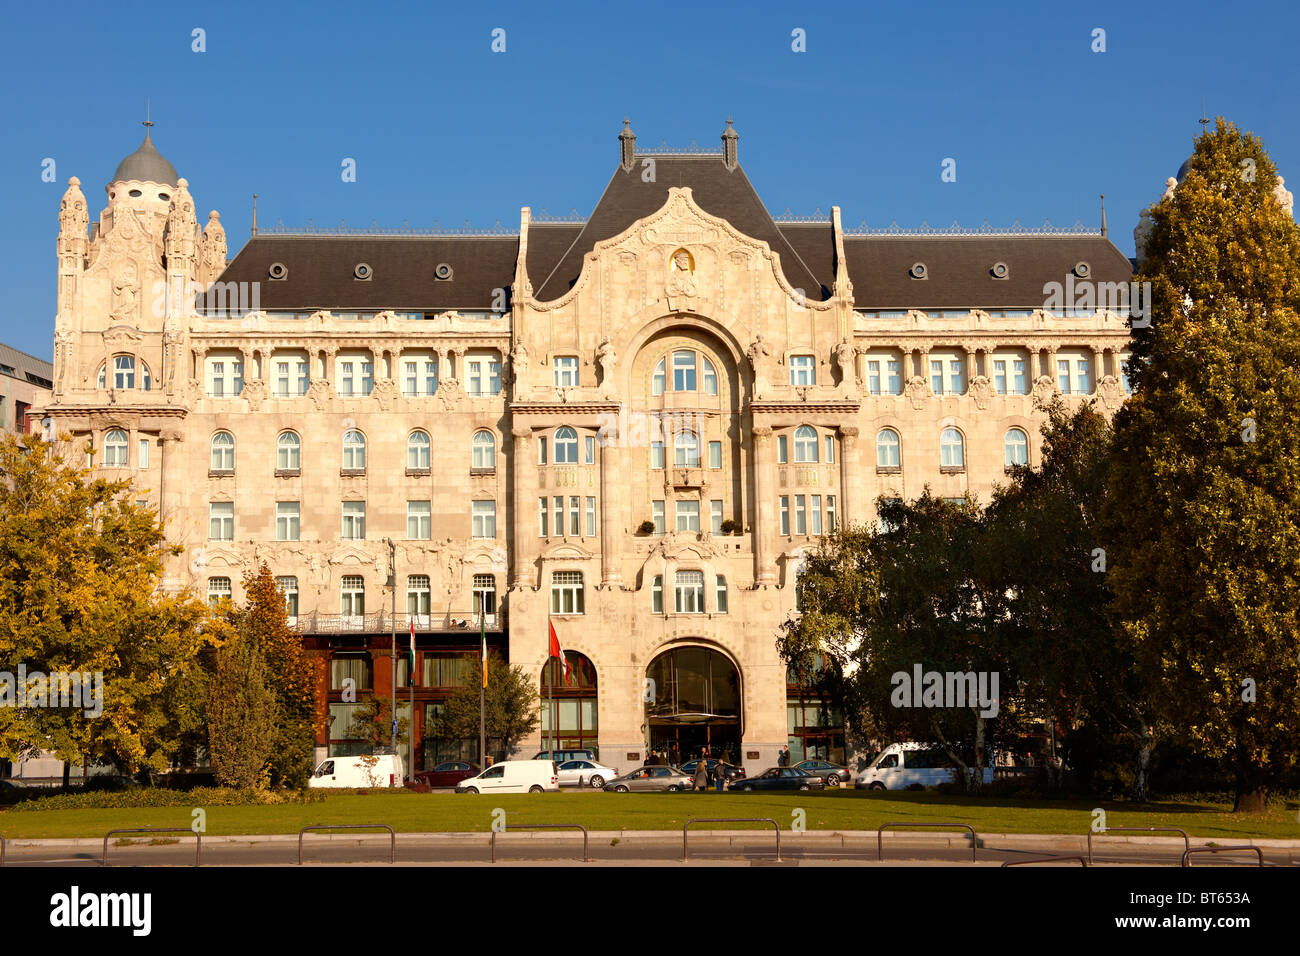 Hôtel des 4 saisons de l'Art Nouveau, Gresham Palace Budapest, Hongrie Banque D'Images